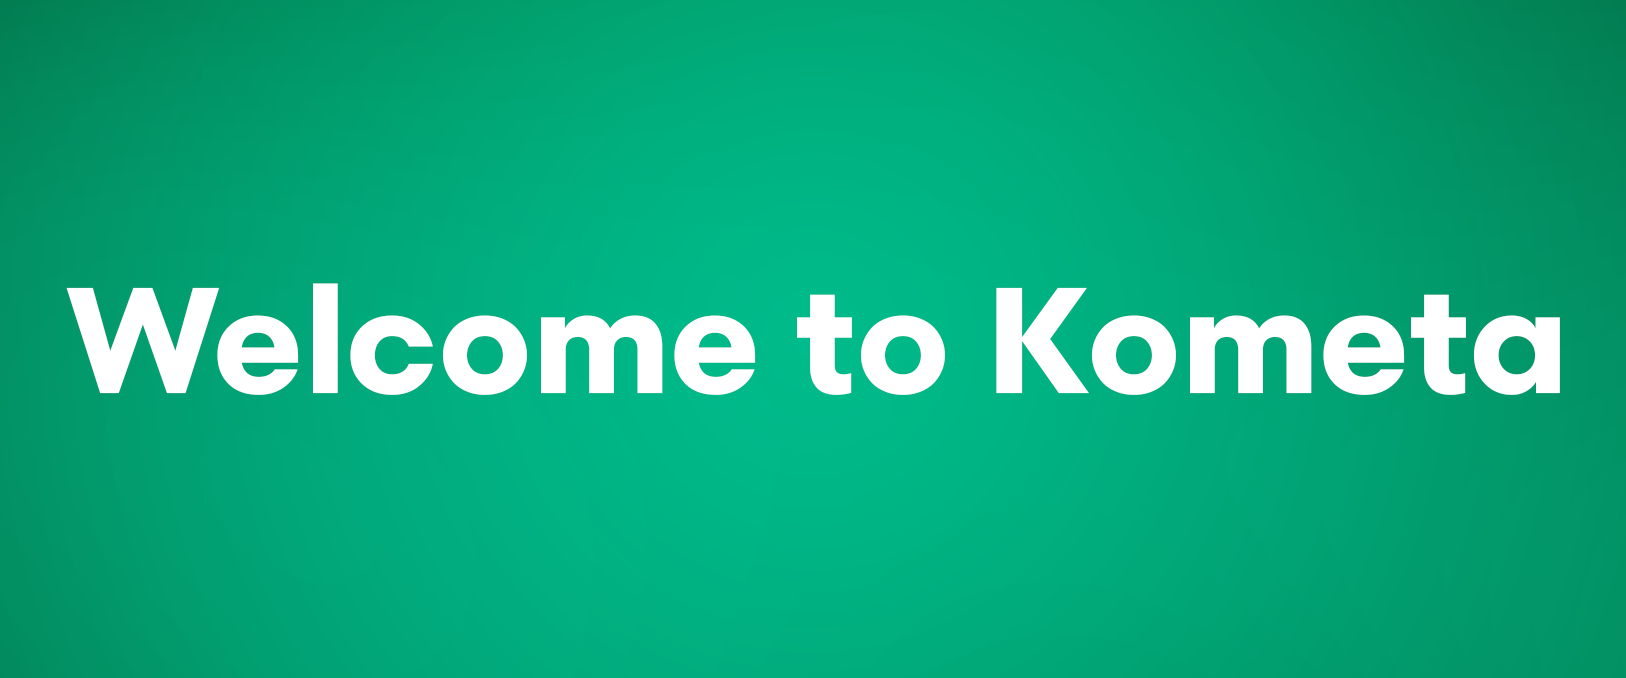 Welcome to Kometa